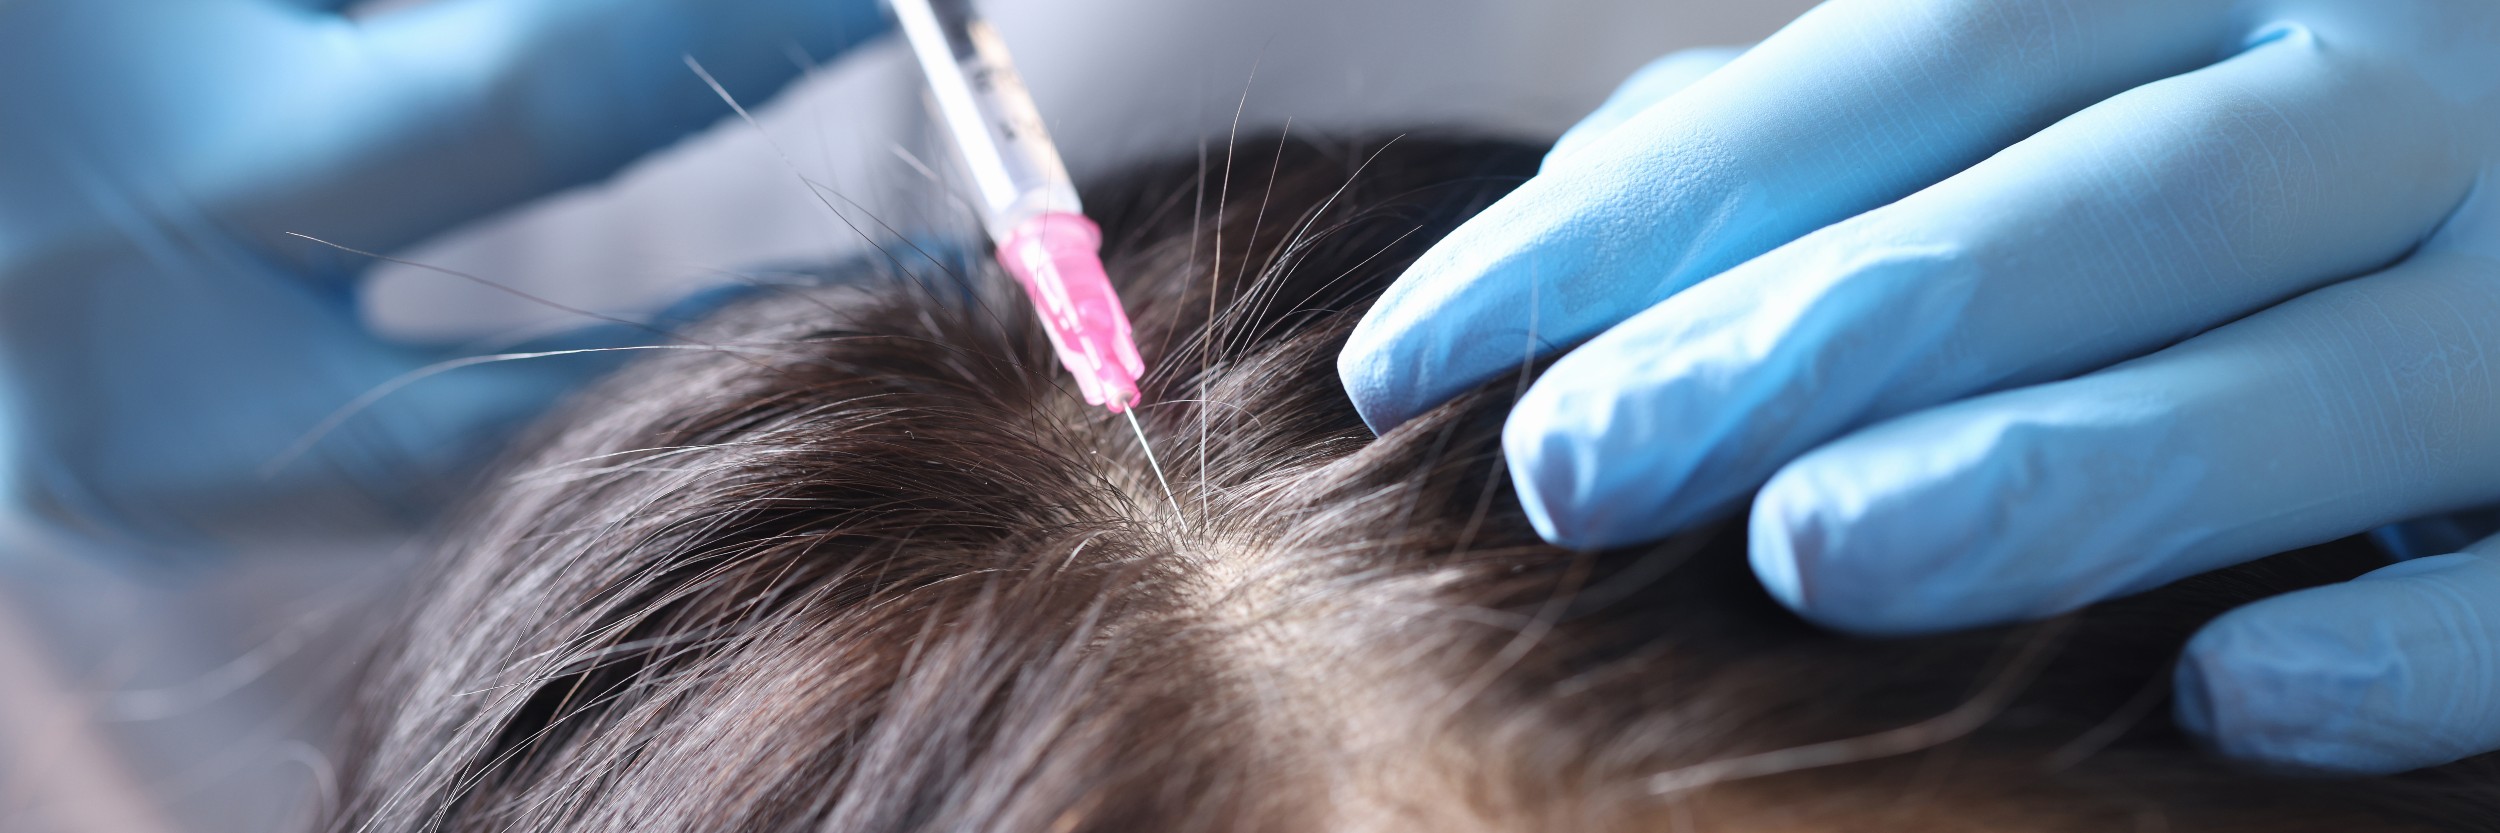 alopecia treatment edmonton